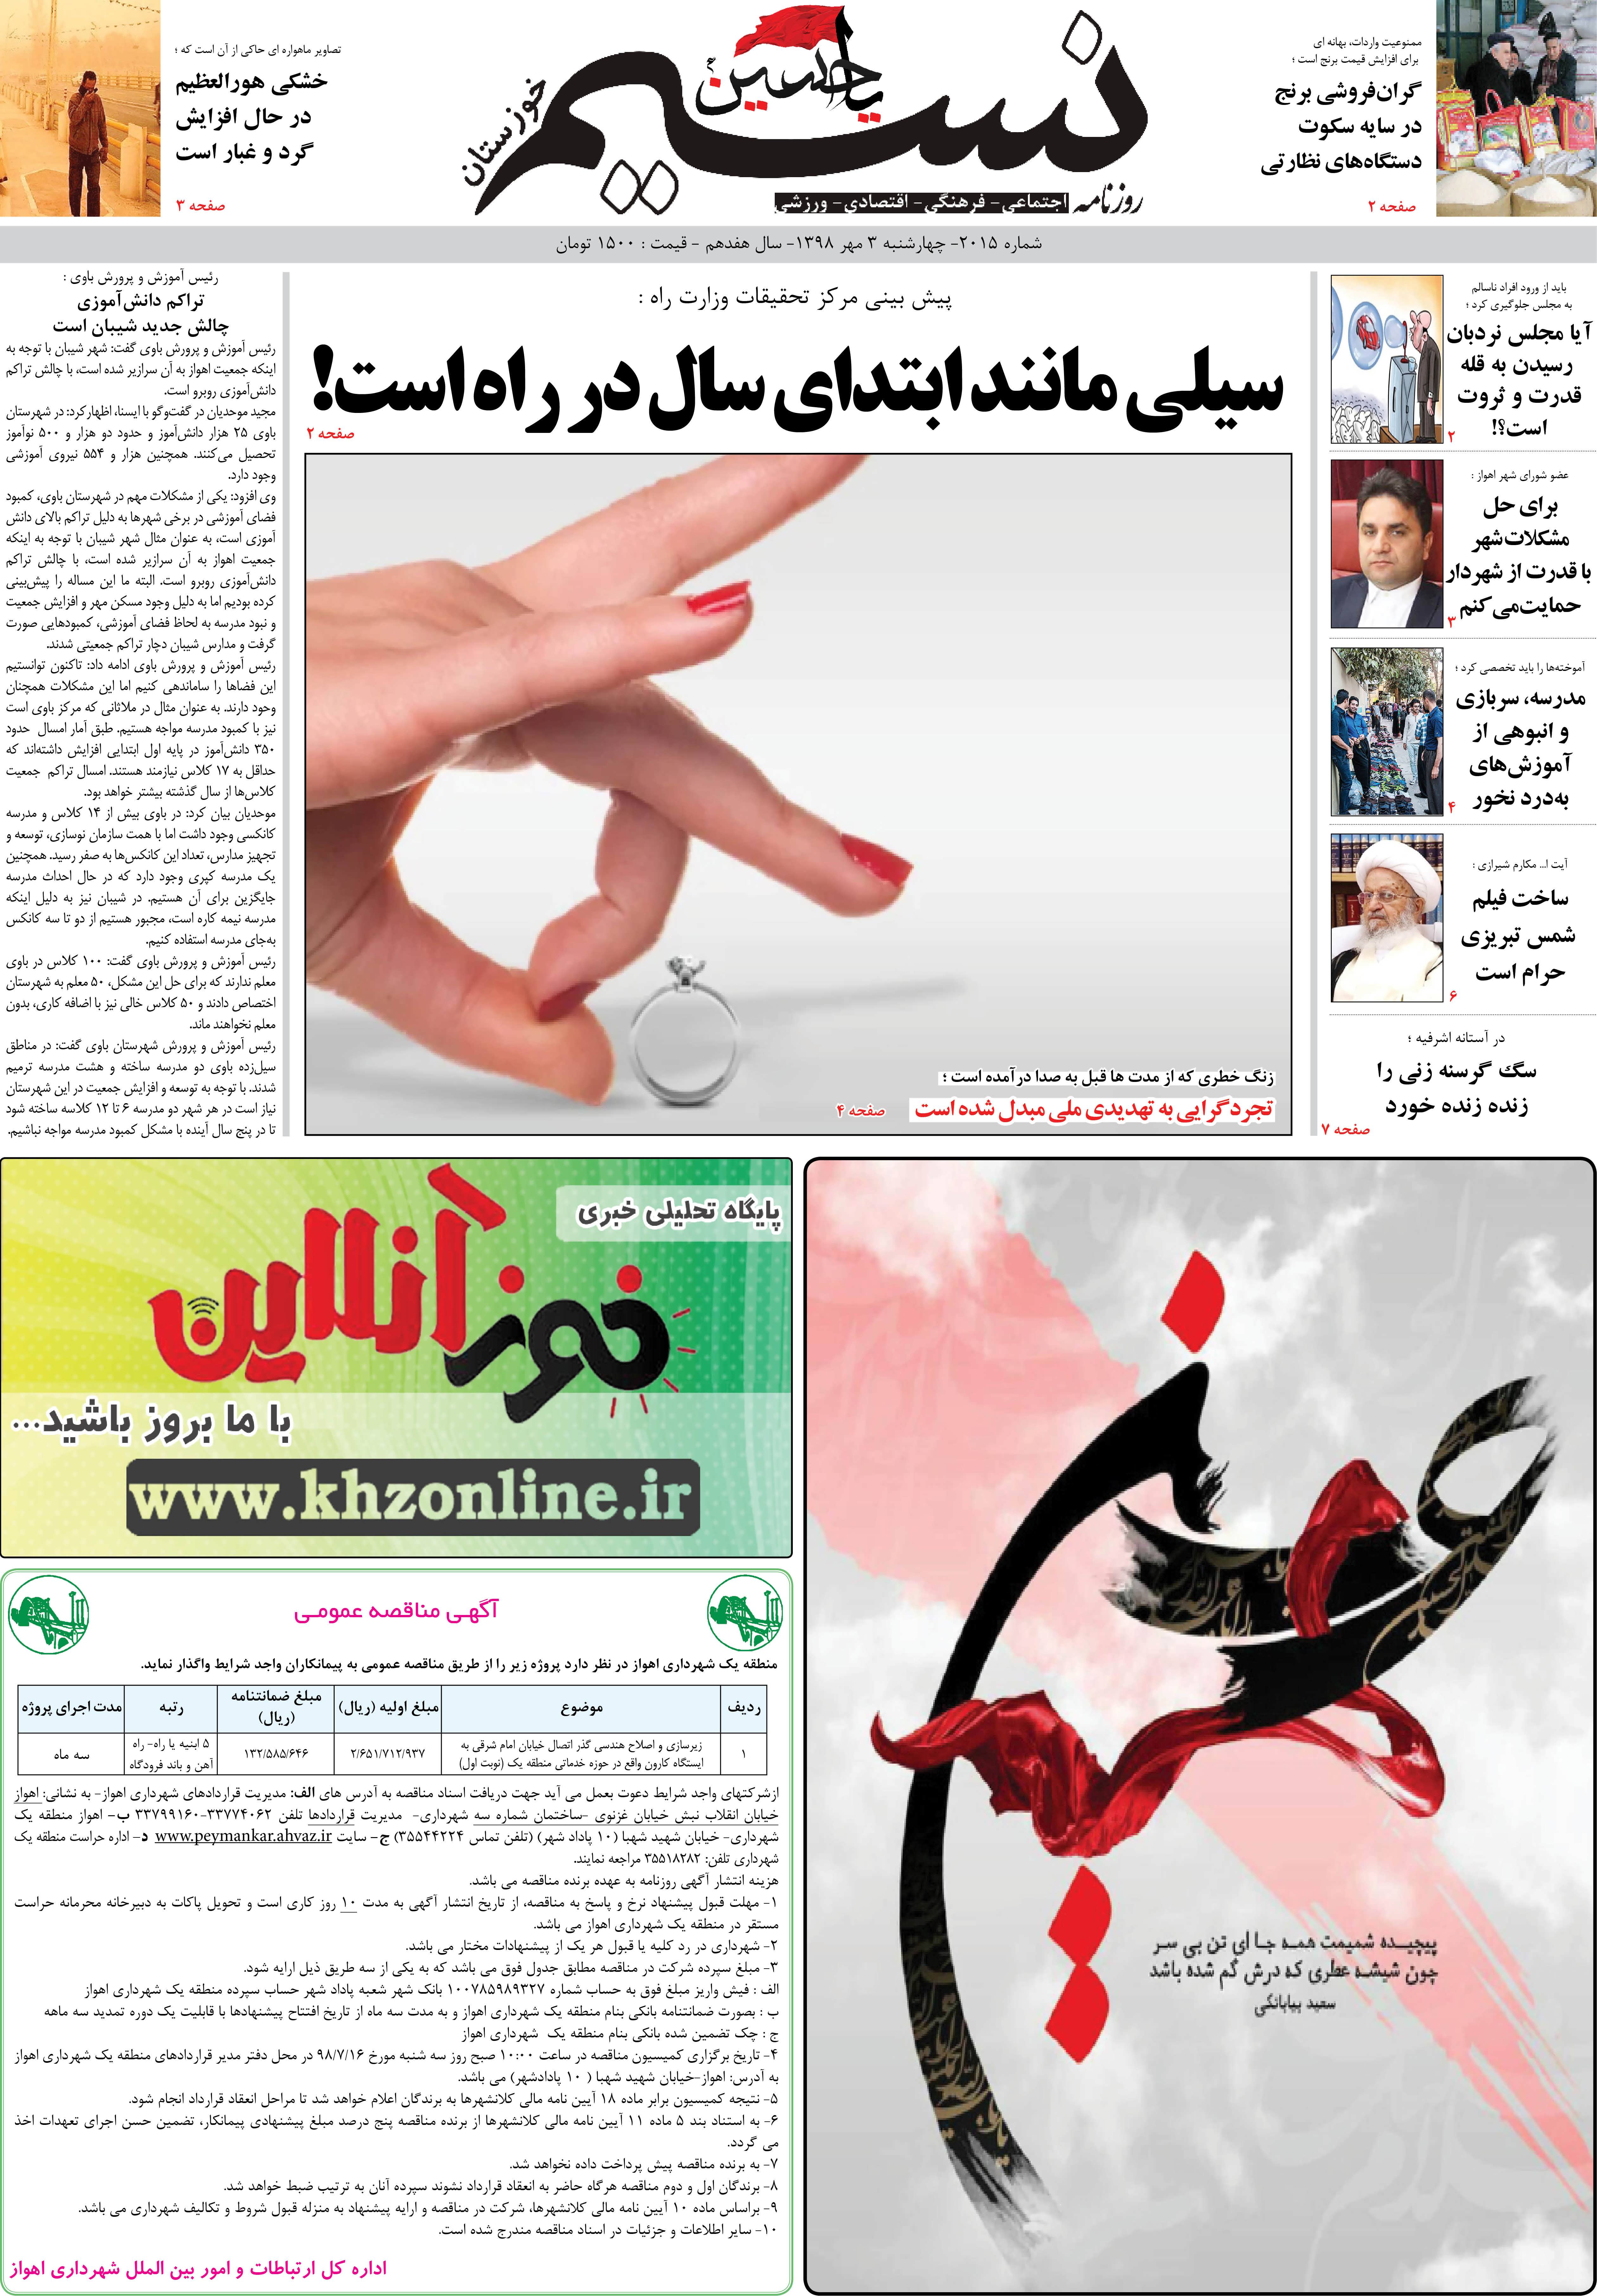 صفحه اصلی روزنامه نسیم شماره 2015 